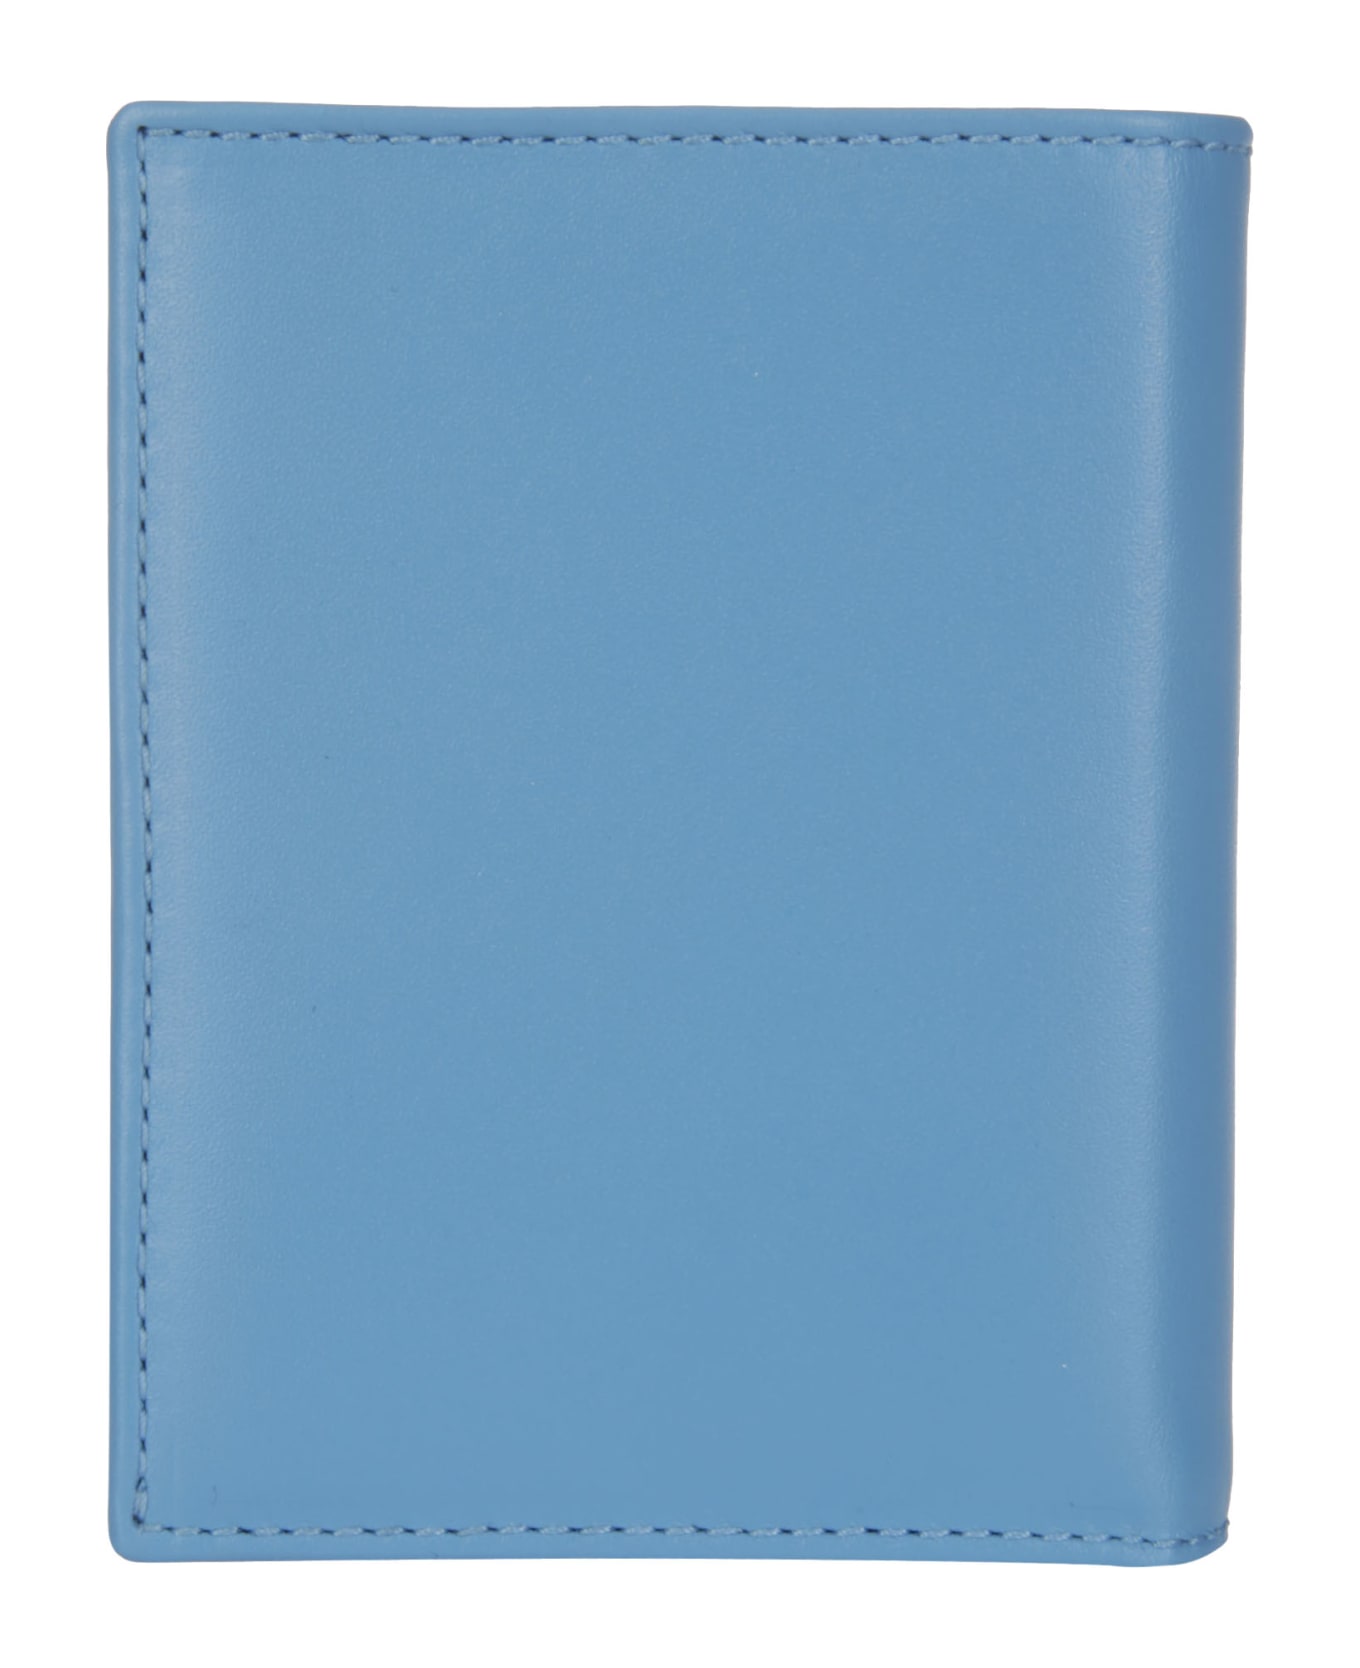 Comme des Garçons Wallet Classic Leather Line A - BLUE 財布